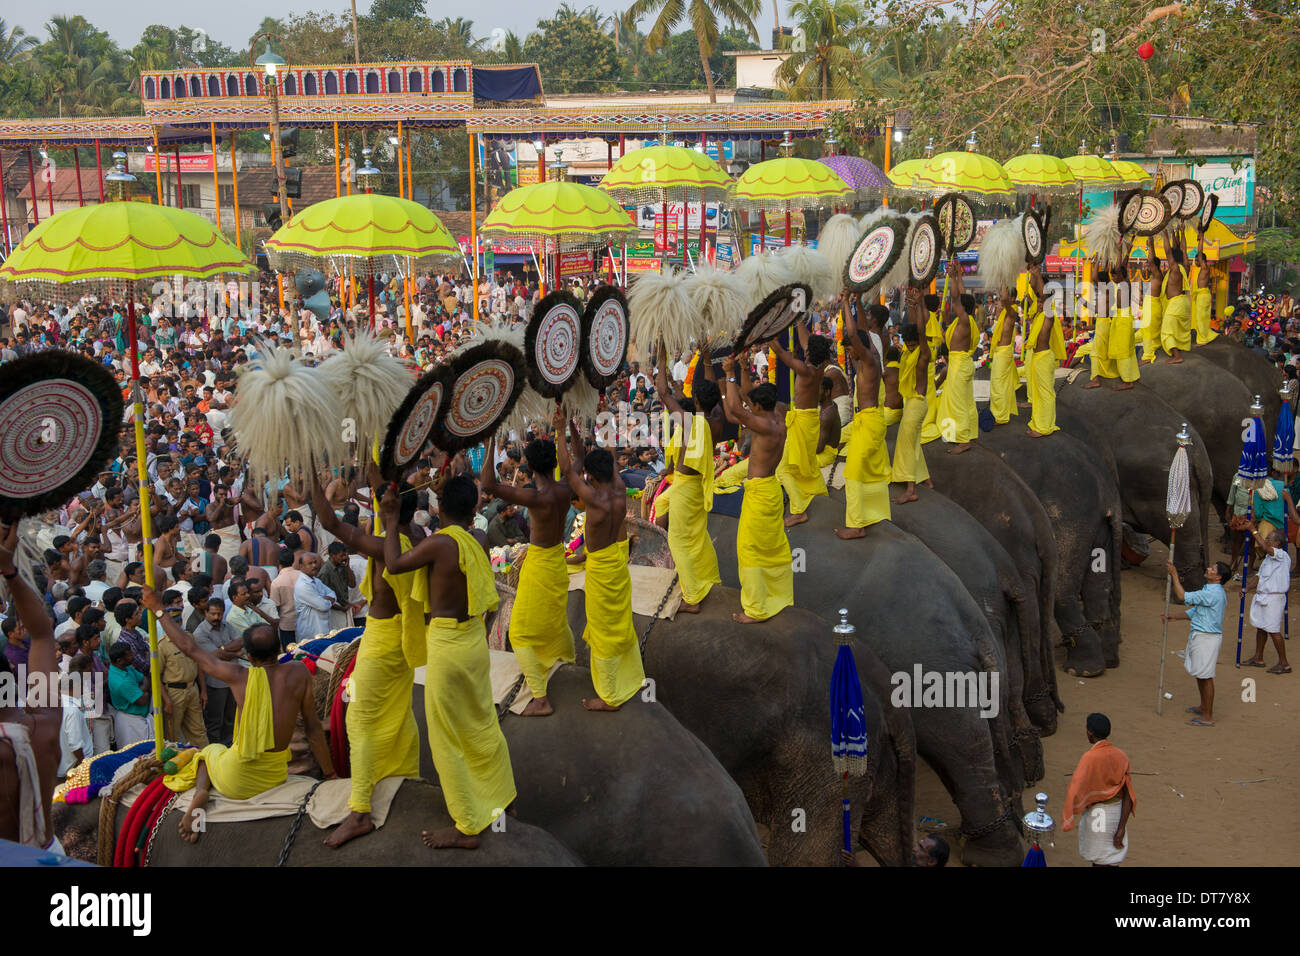 La ligne des éléphants d'être monté par des prêtres et Venchamaram Muthukuda holding parasols fouets à l'Goureeswara Temple Fête, Cherai, près de Kochi (Cochin), Kerala, Inde Banque D'Images